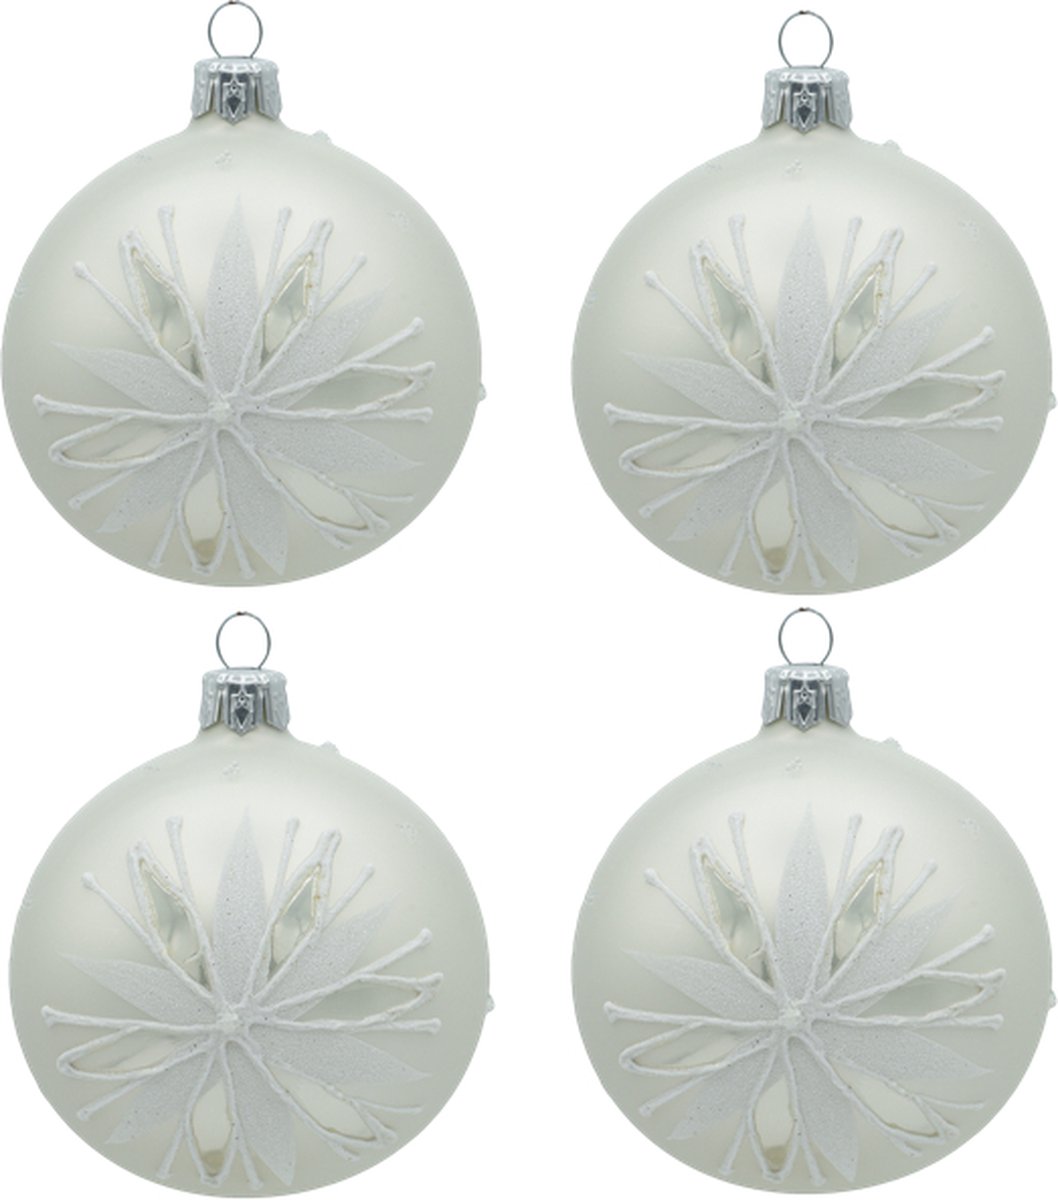 Feestelijke Witte Kerstballen met Kerstster Decoratie - set van 4 glazen kerstballen van 8 cm